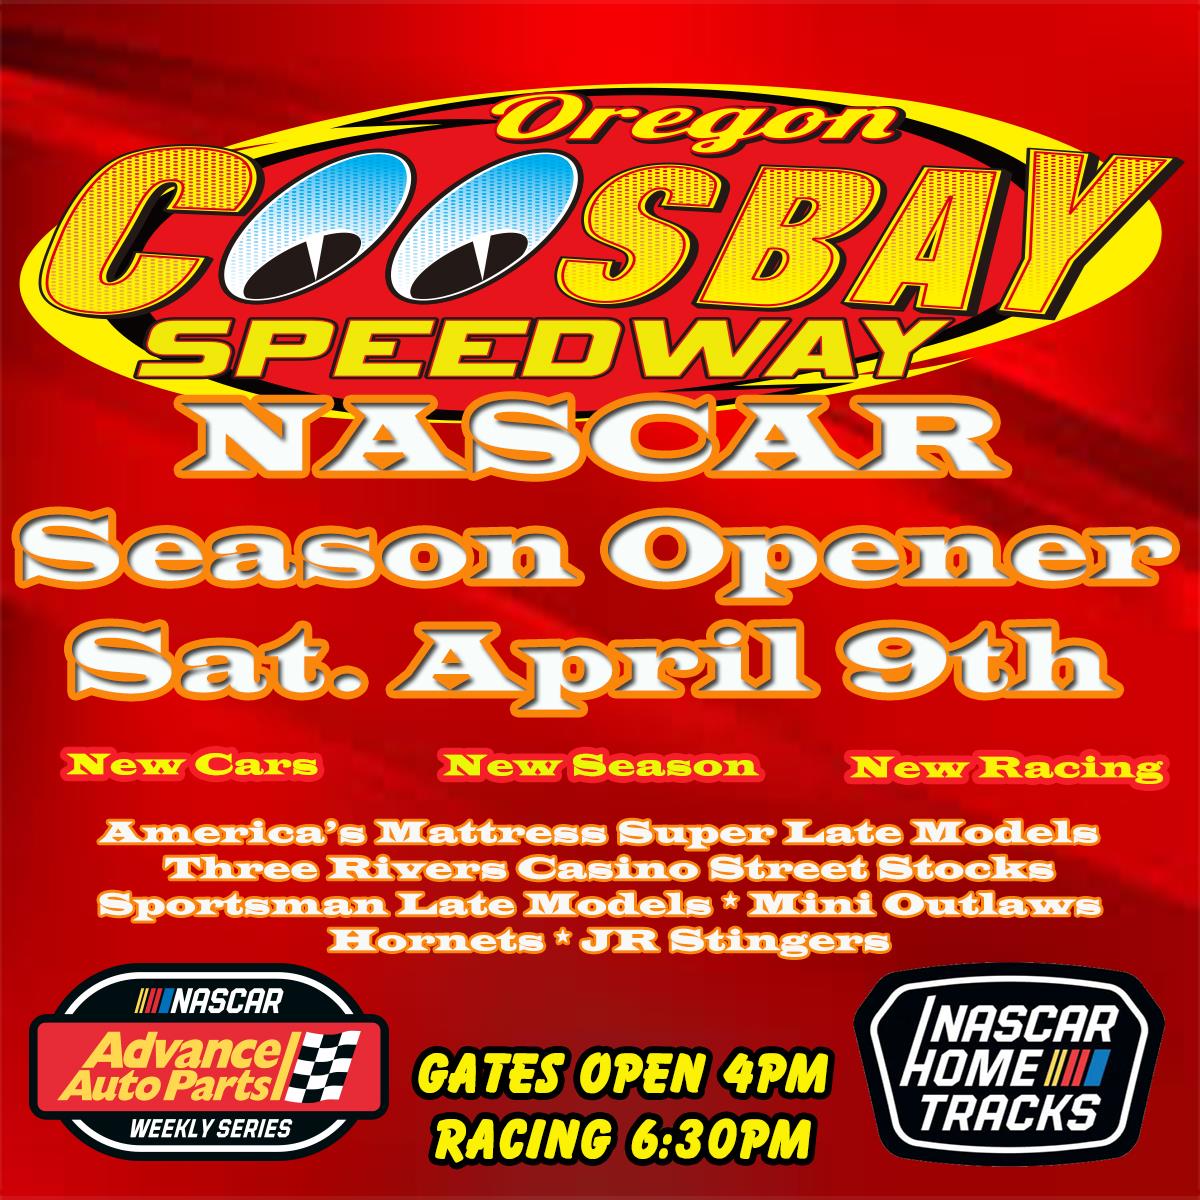 NASCAR Season Opener Saturday April 9th